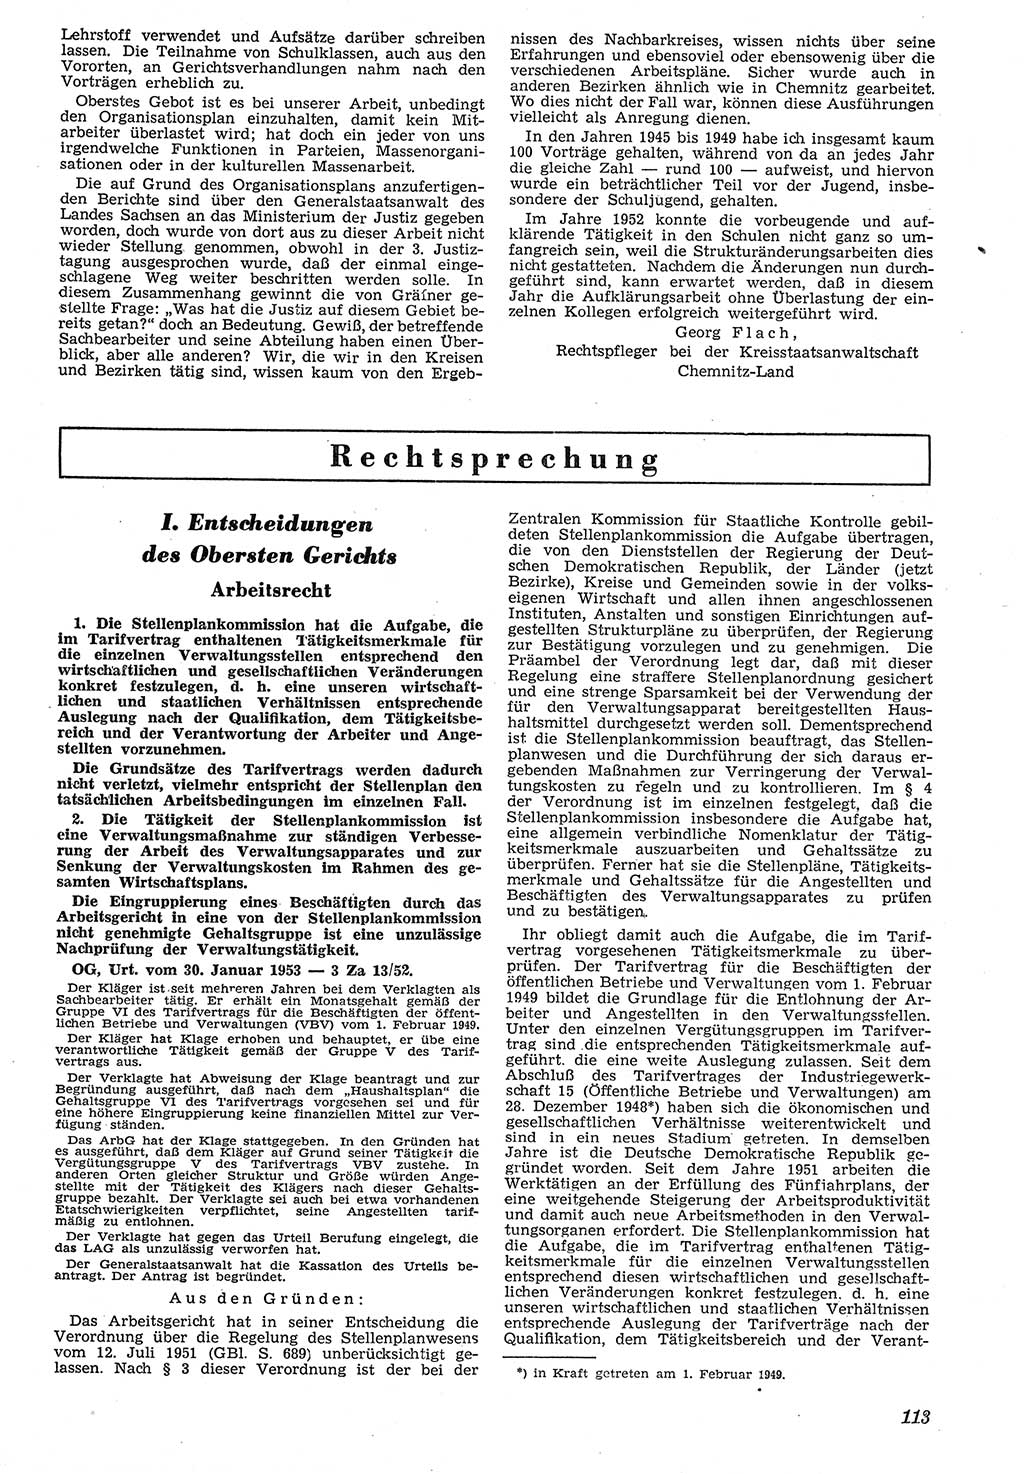 Neue Justiz (NJ), Zeitschrift für Recht und Rechtswissenschaft [Deutsche Demokratische Republik (DDR)], 7. Jahrgang 1953, Seite 113 (NJ DDR 1953, S. 113)